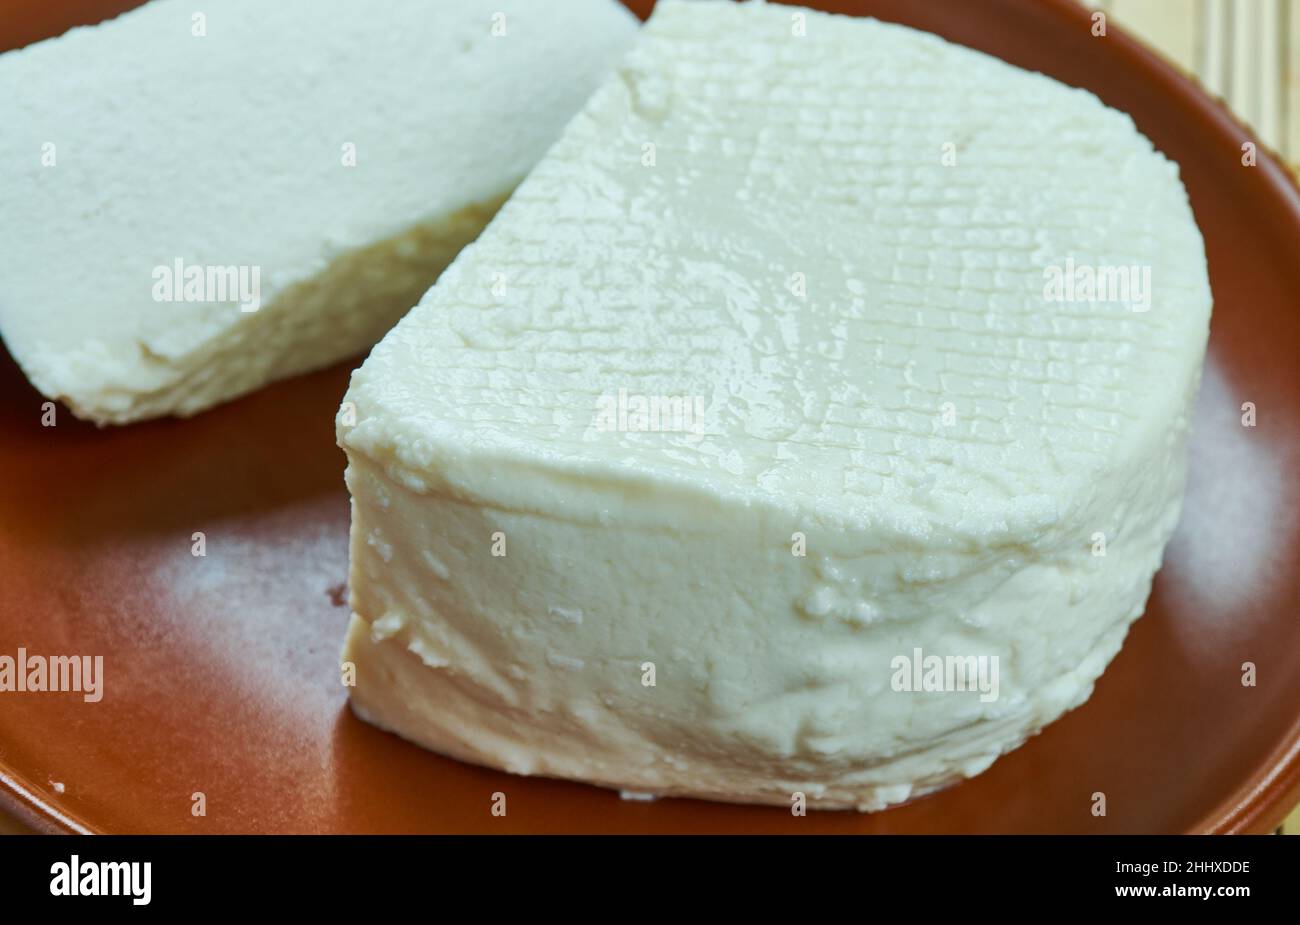 Formaggio Paraguay - Queso Paraguay formaggio a base di latte vaccino del Paraguay. Foto Stock